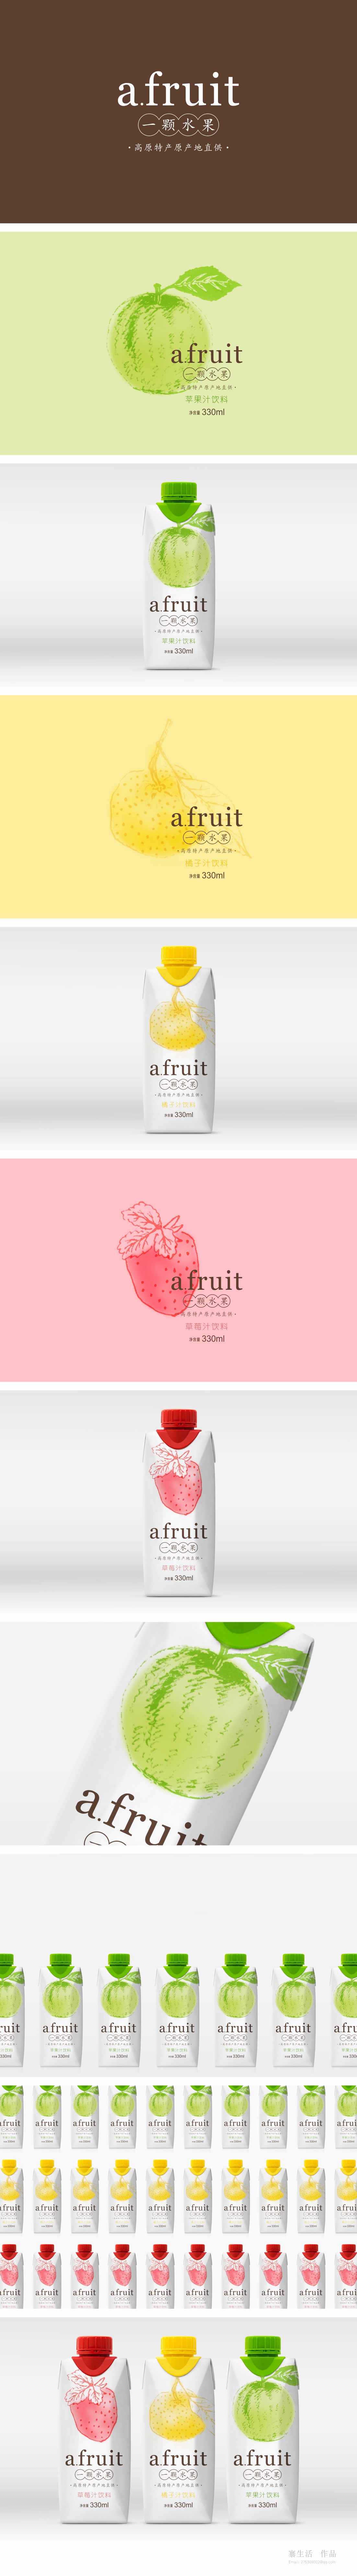 A-fruit_果汁包装设计